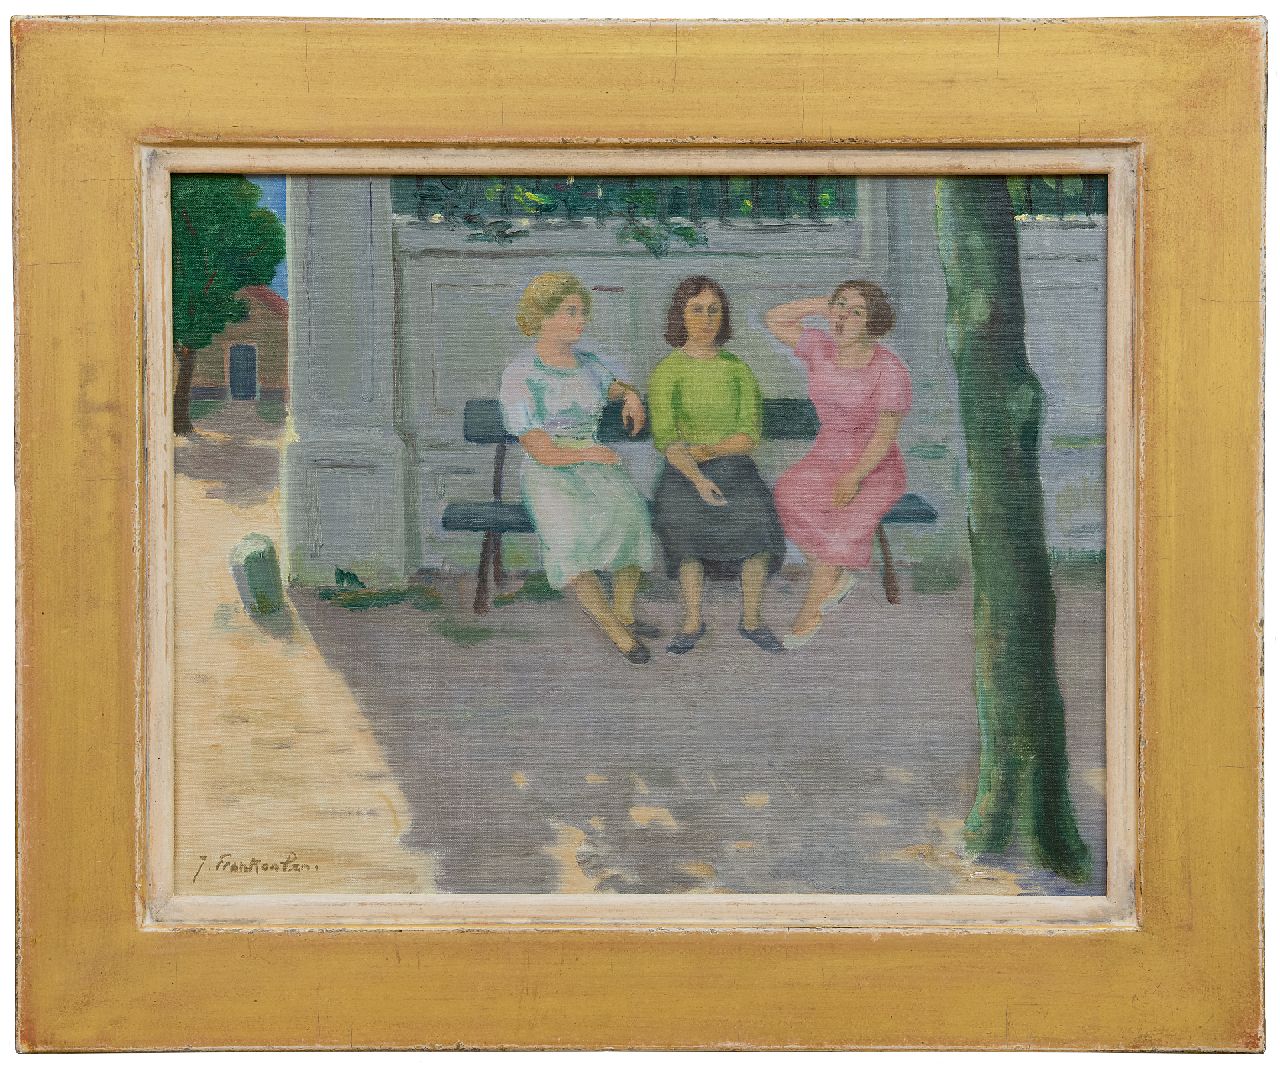 Franken J.P.J.  | Joannes Petrus Josephus 'Jan' Franken, Drie vrouwen op een bank, olieverf op doek 35,4 x 45,2 cm, gesigneerd linksonder